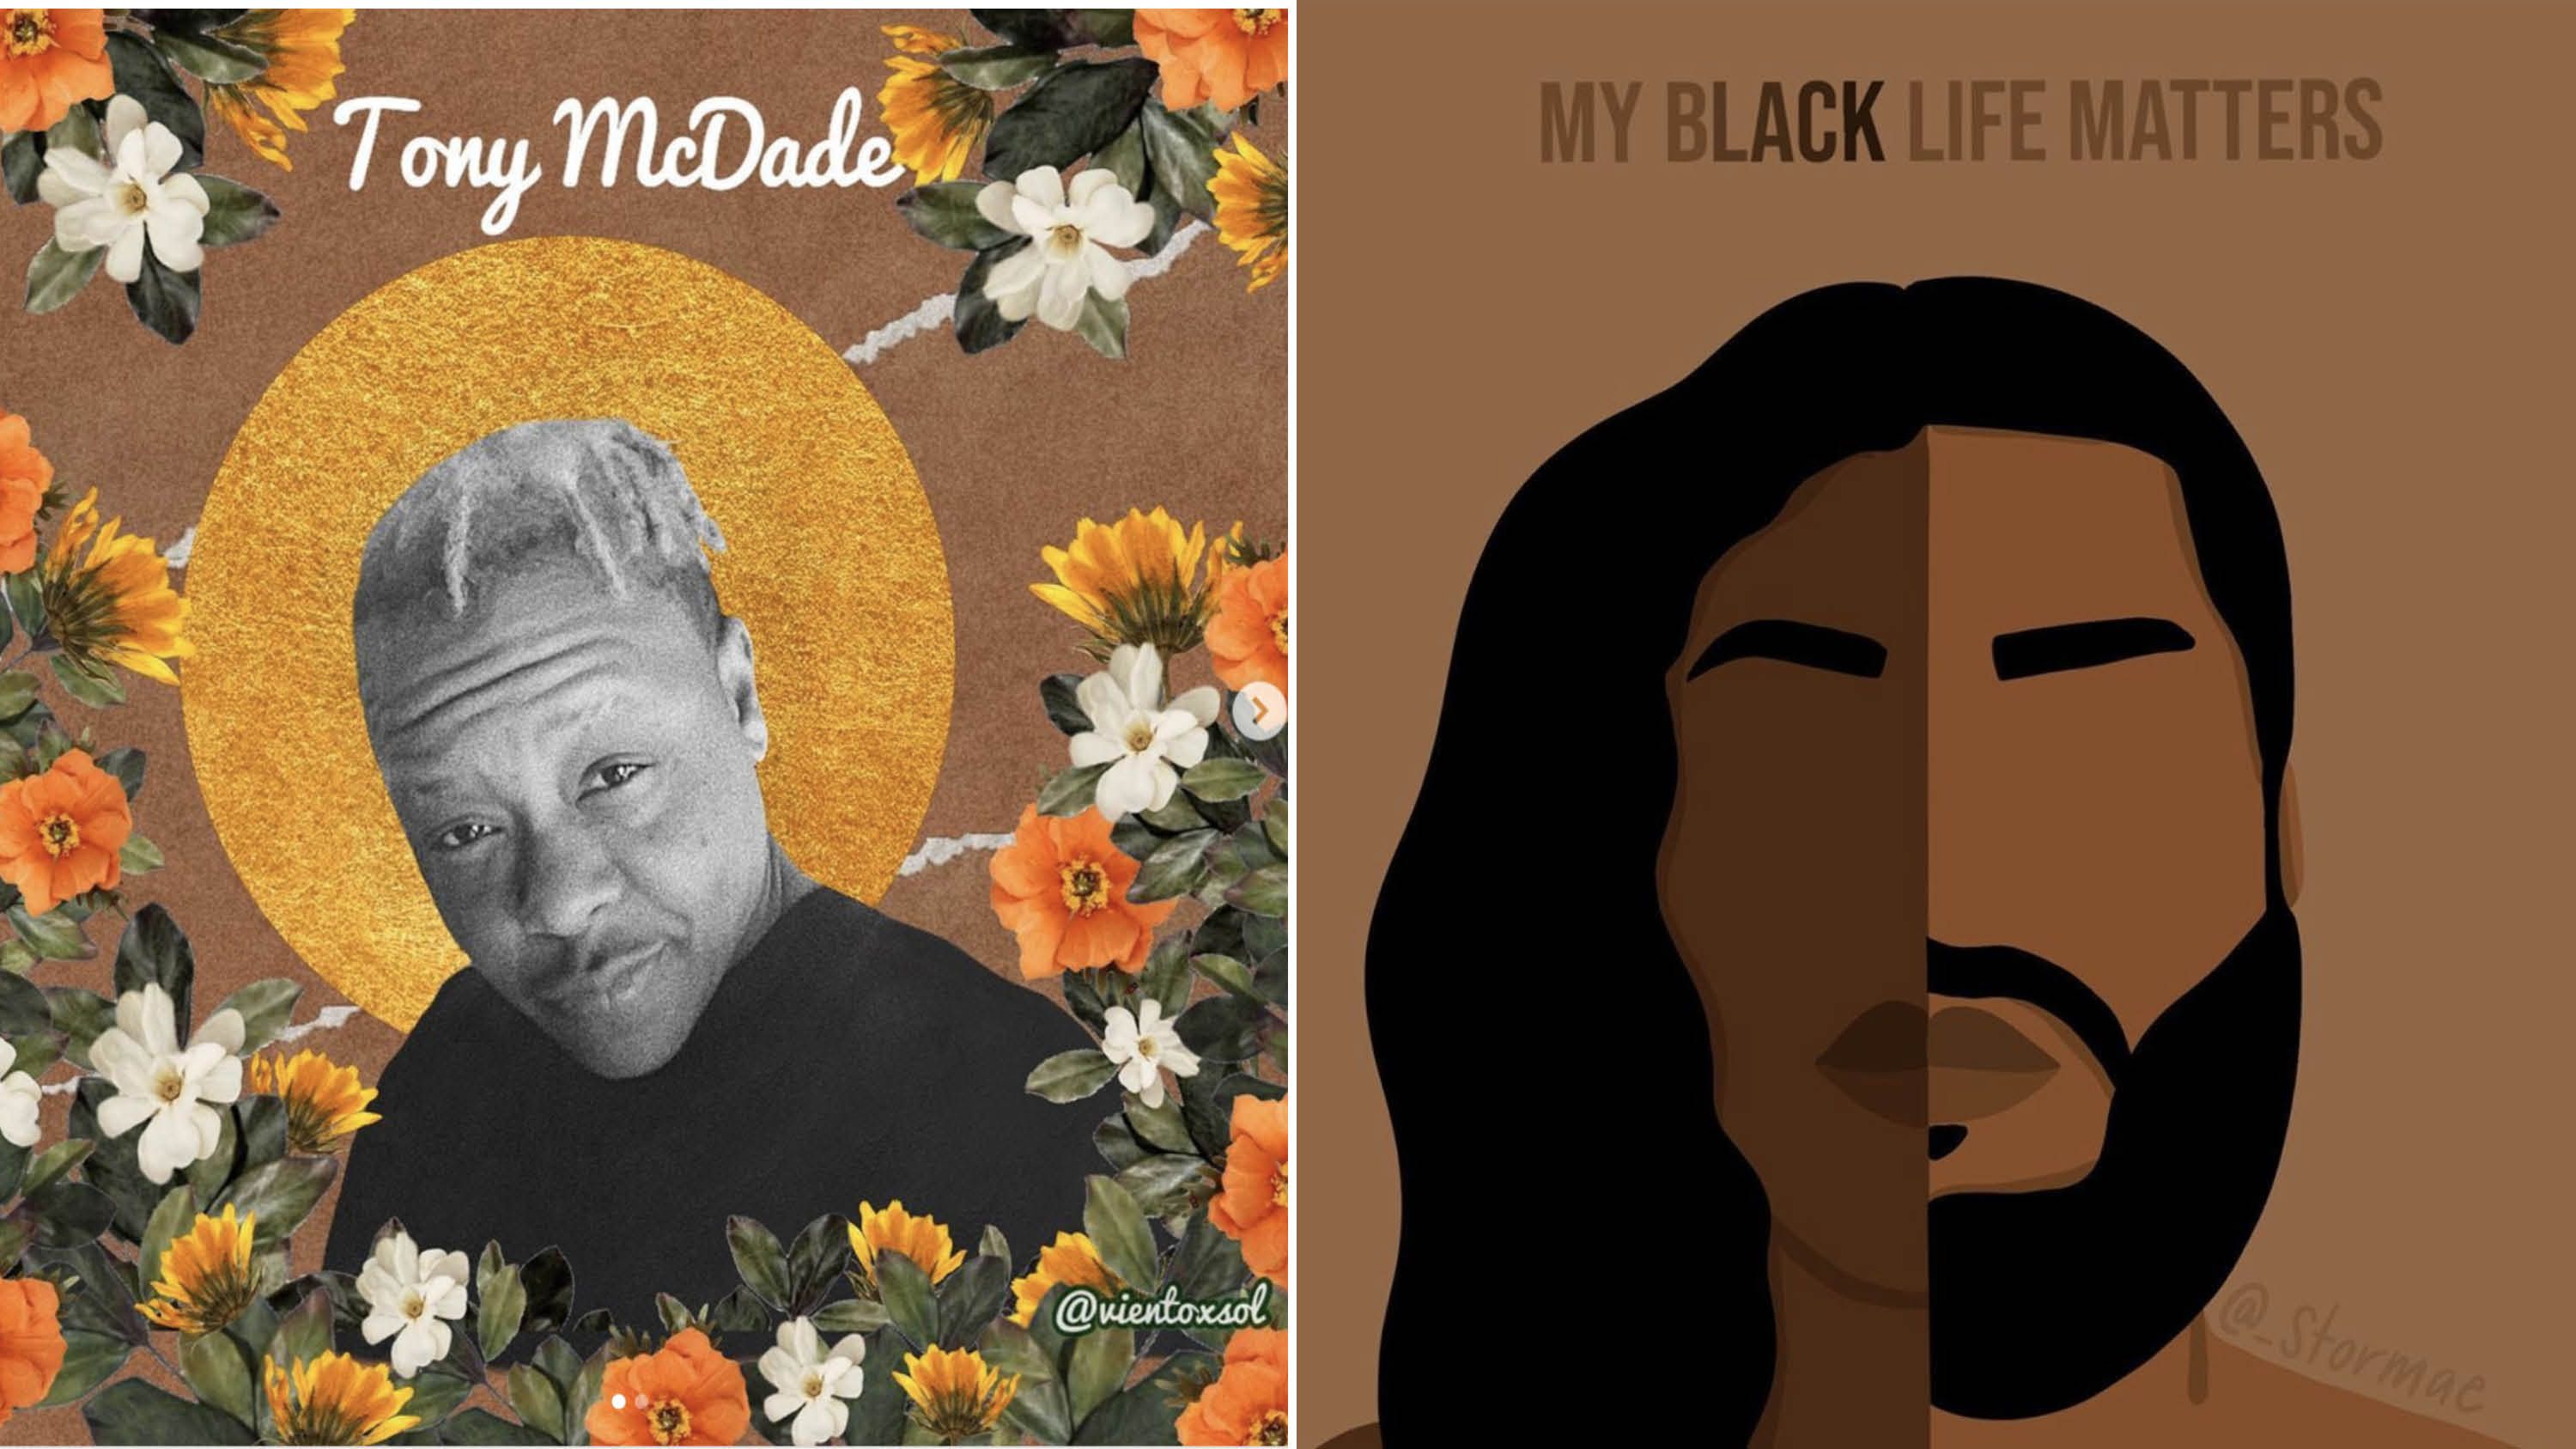 The Artists Behind Black Lives Matter Illustrations on Instagram